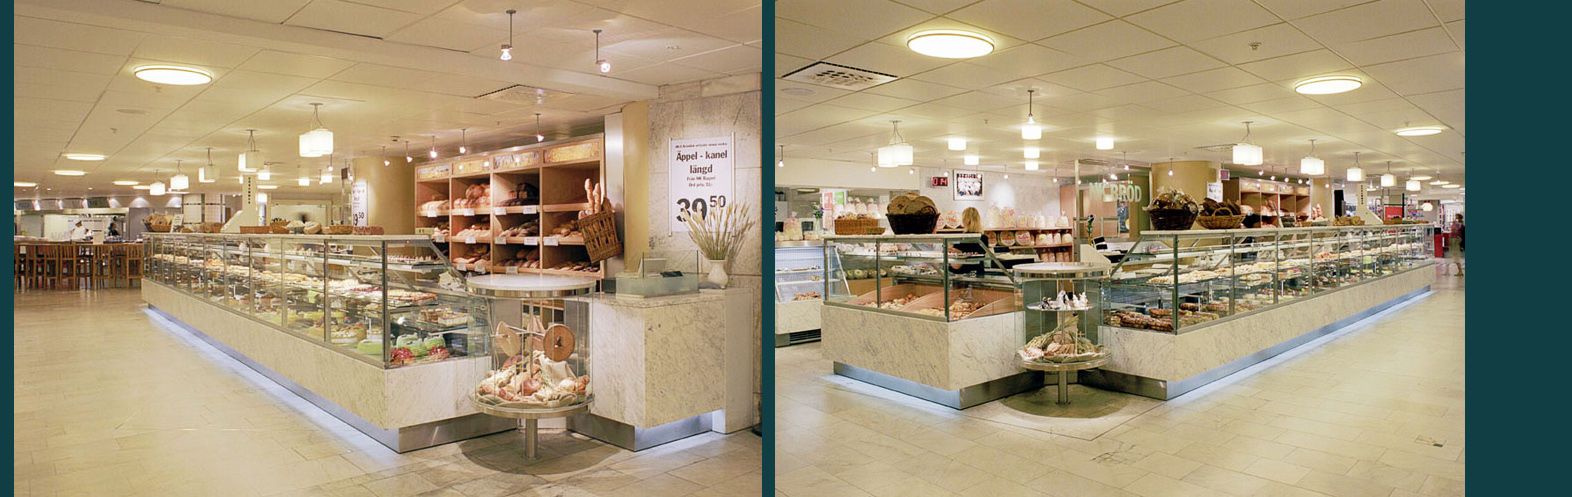 Rex Arkitektbyrå ritade ny bageributik till NK